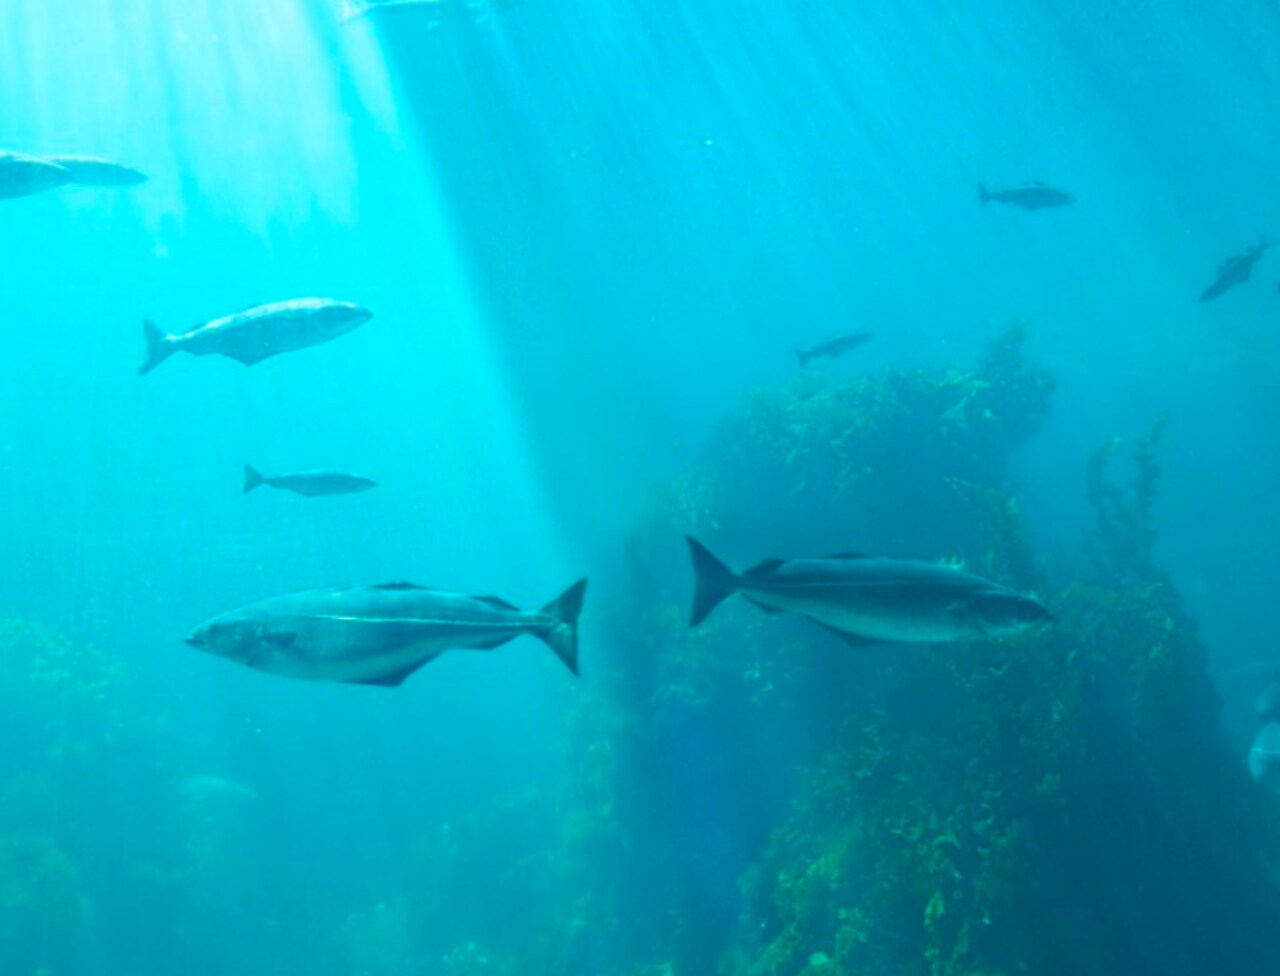 Foto del fondo marino, con varios peces alrededor de un coral.